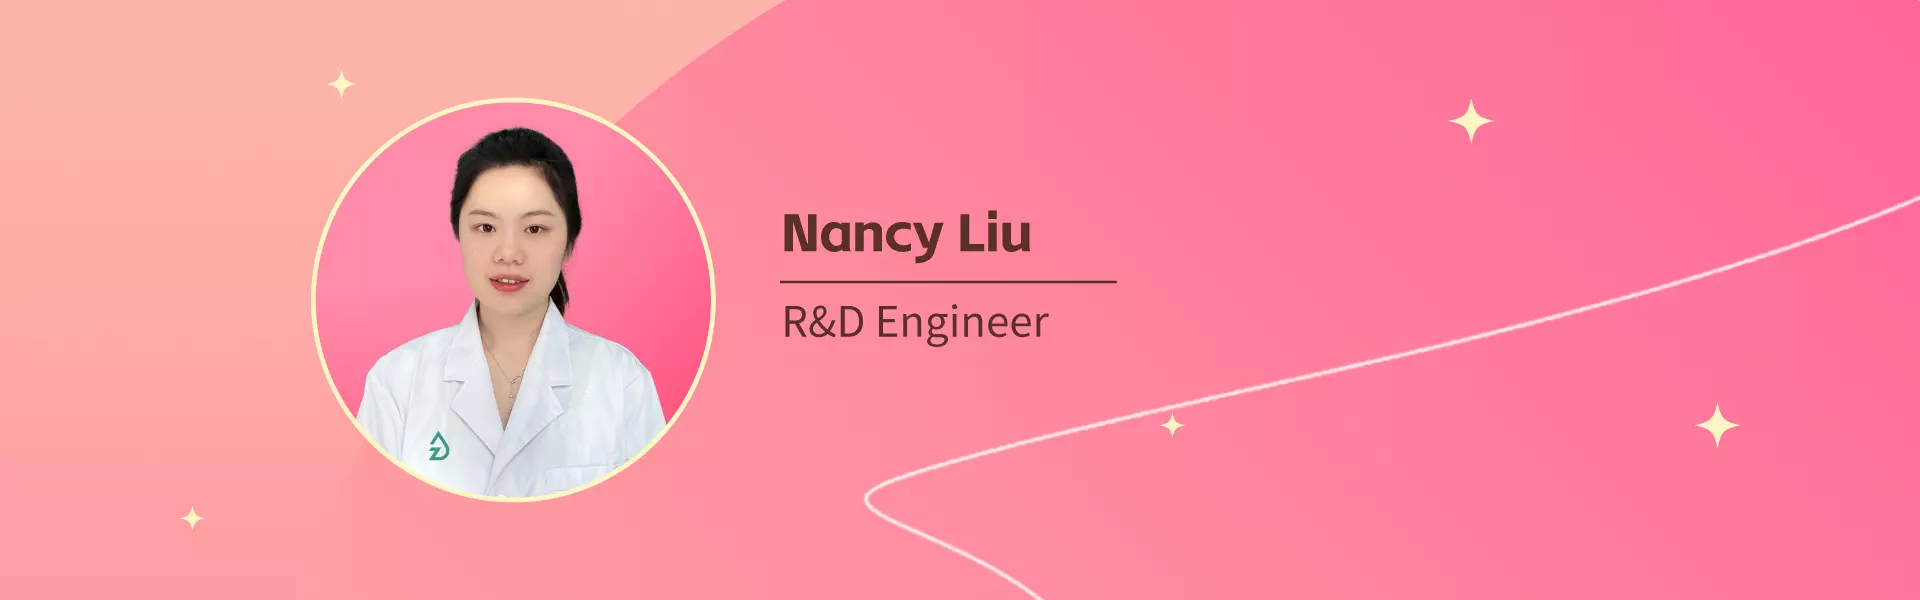 Nancy Liu  Zinwi R&D Engineer